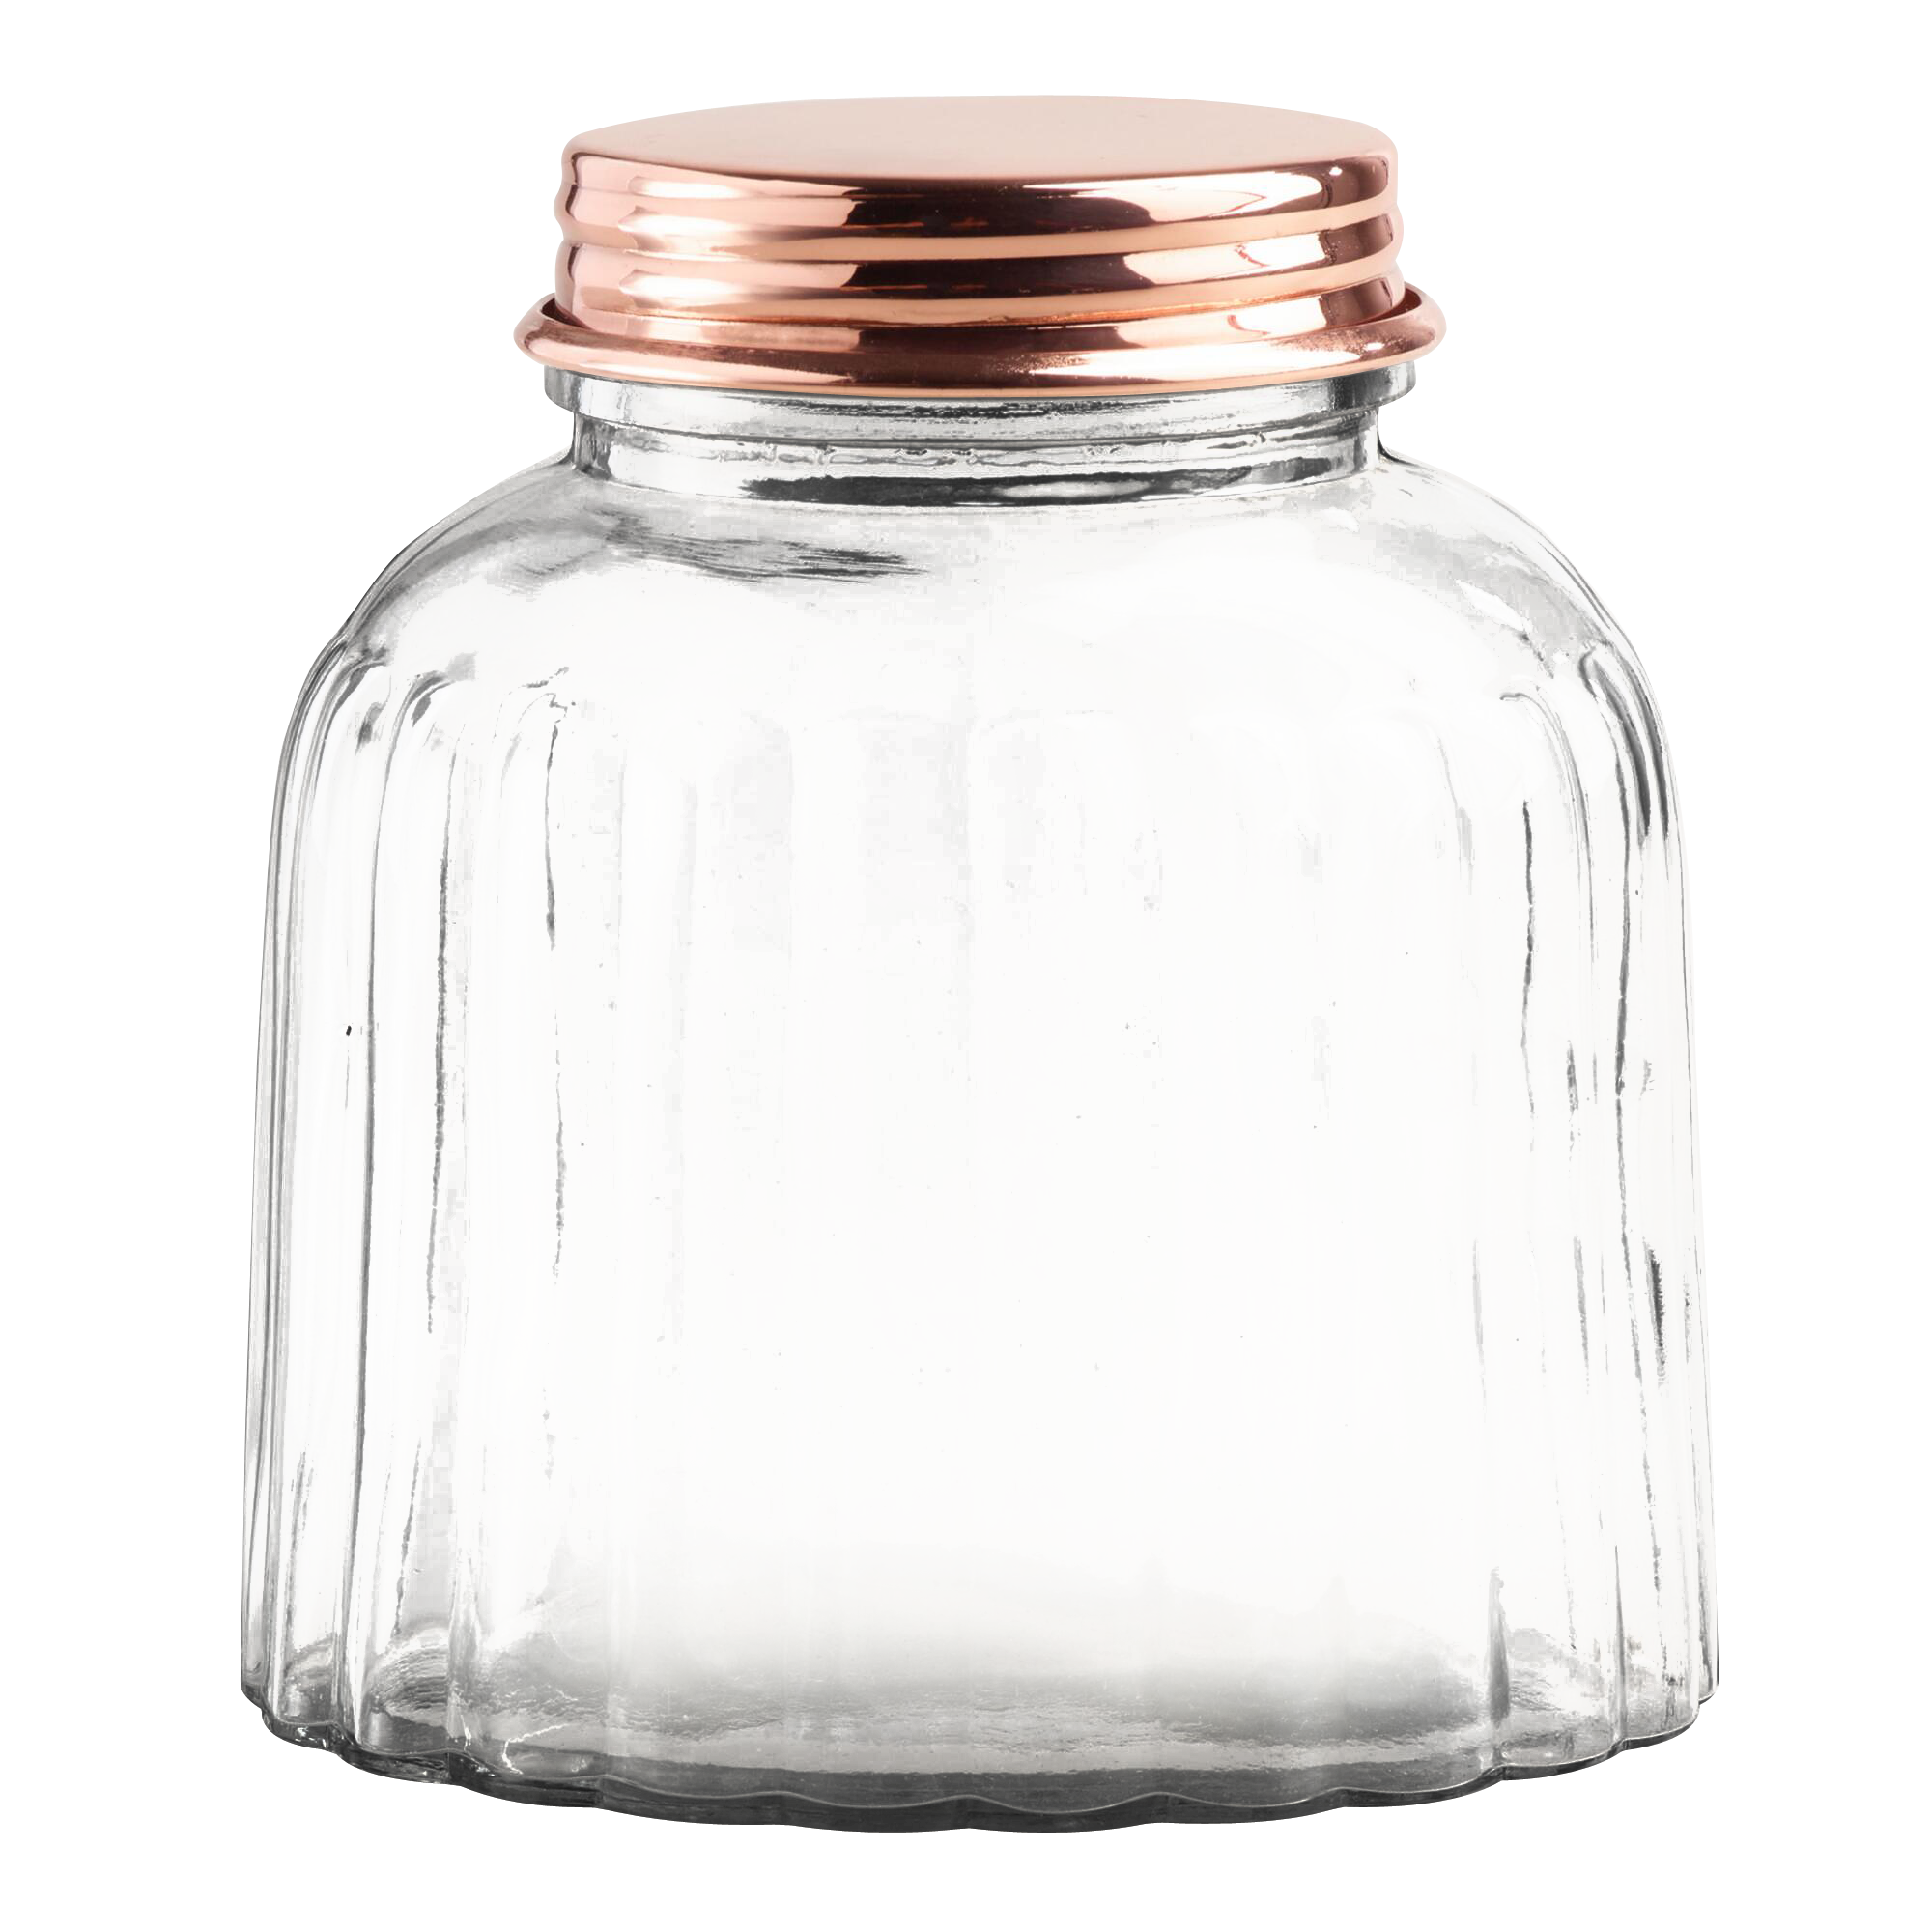 Images pngpix jar transparent. Glass bottle png